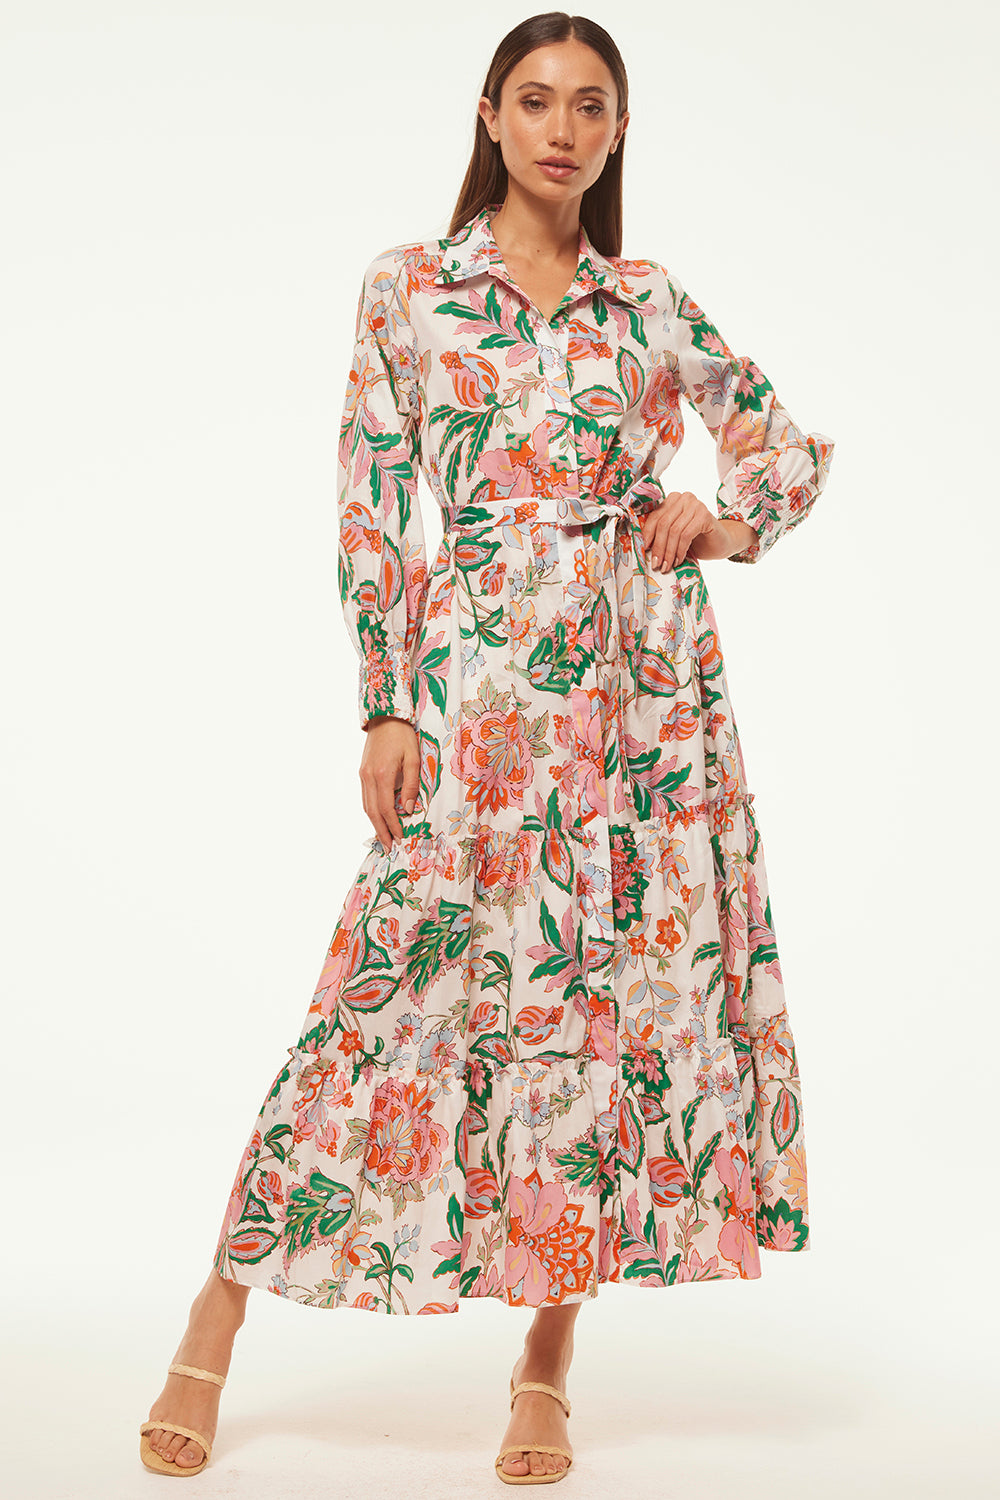 Misa Esmee Dress in Casablanca Floral